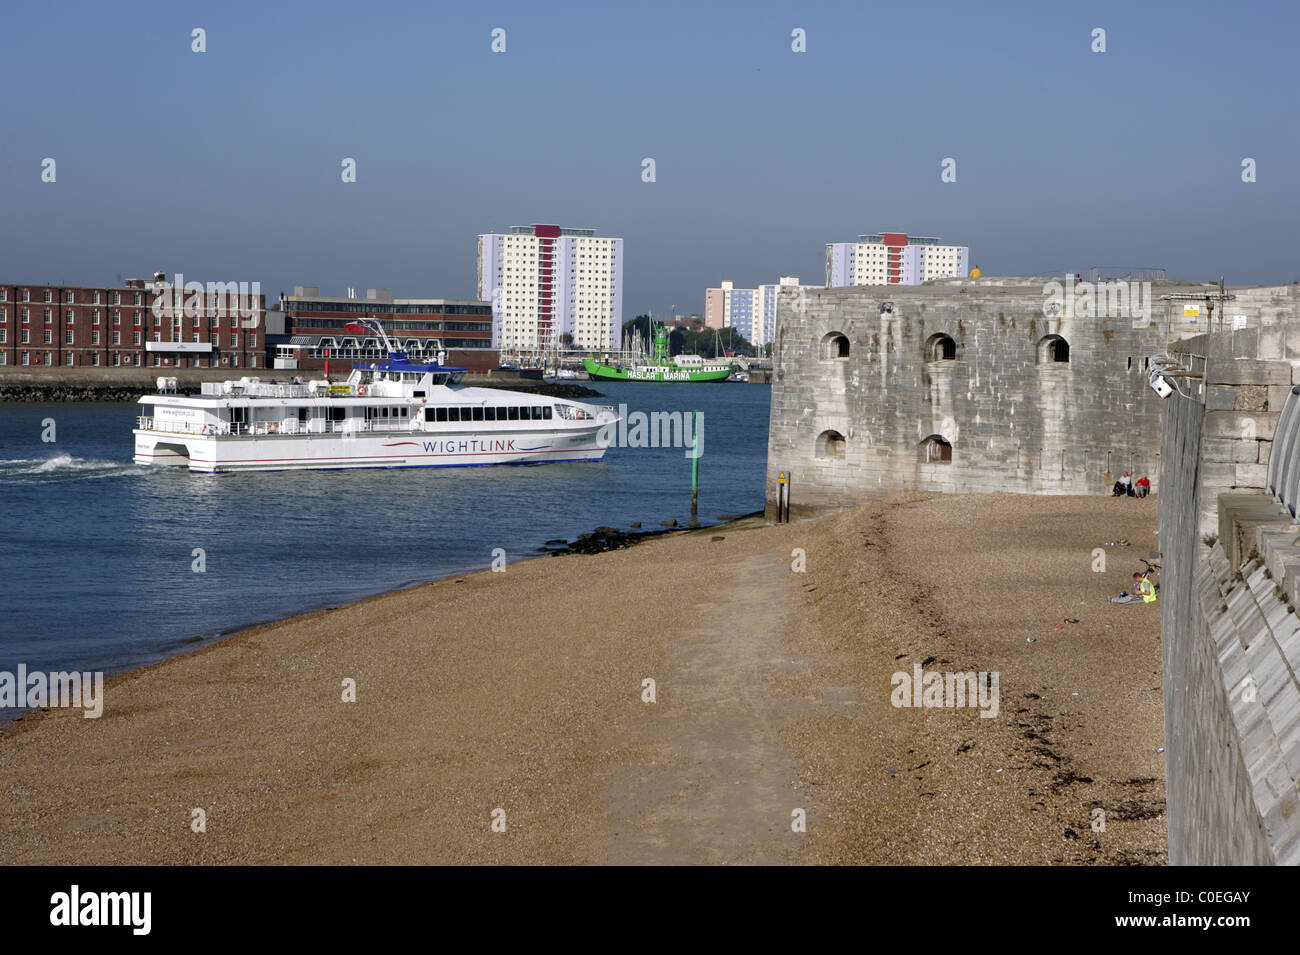 Ferry wightlink passe la tour ronde comme il fait son chemin en Portsmouth, Hampshire, Royaume-Uni. Banque D'Images